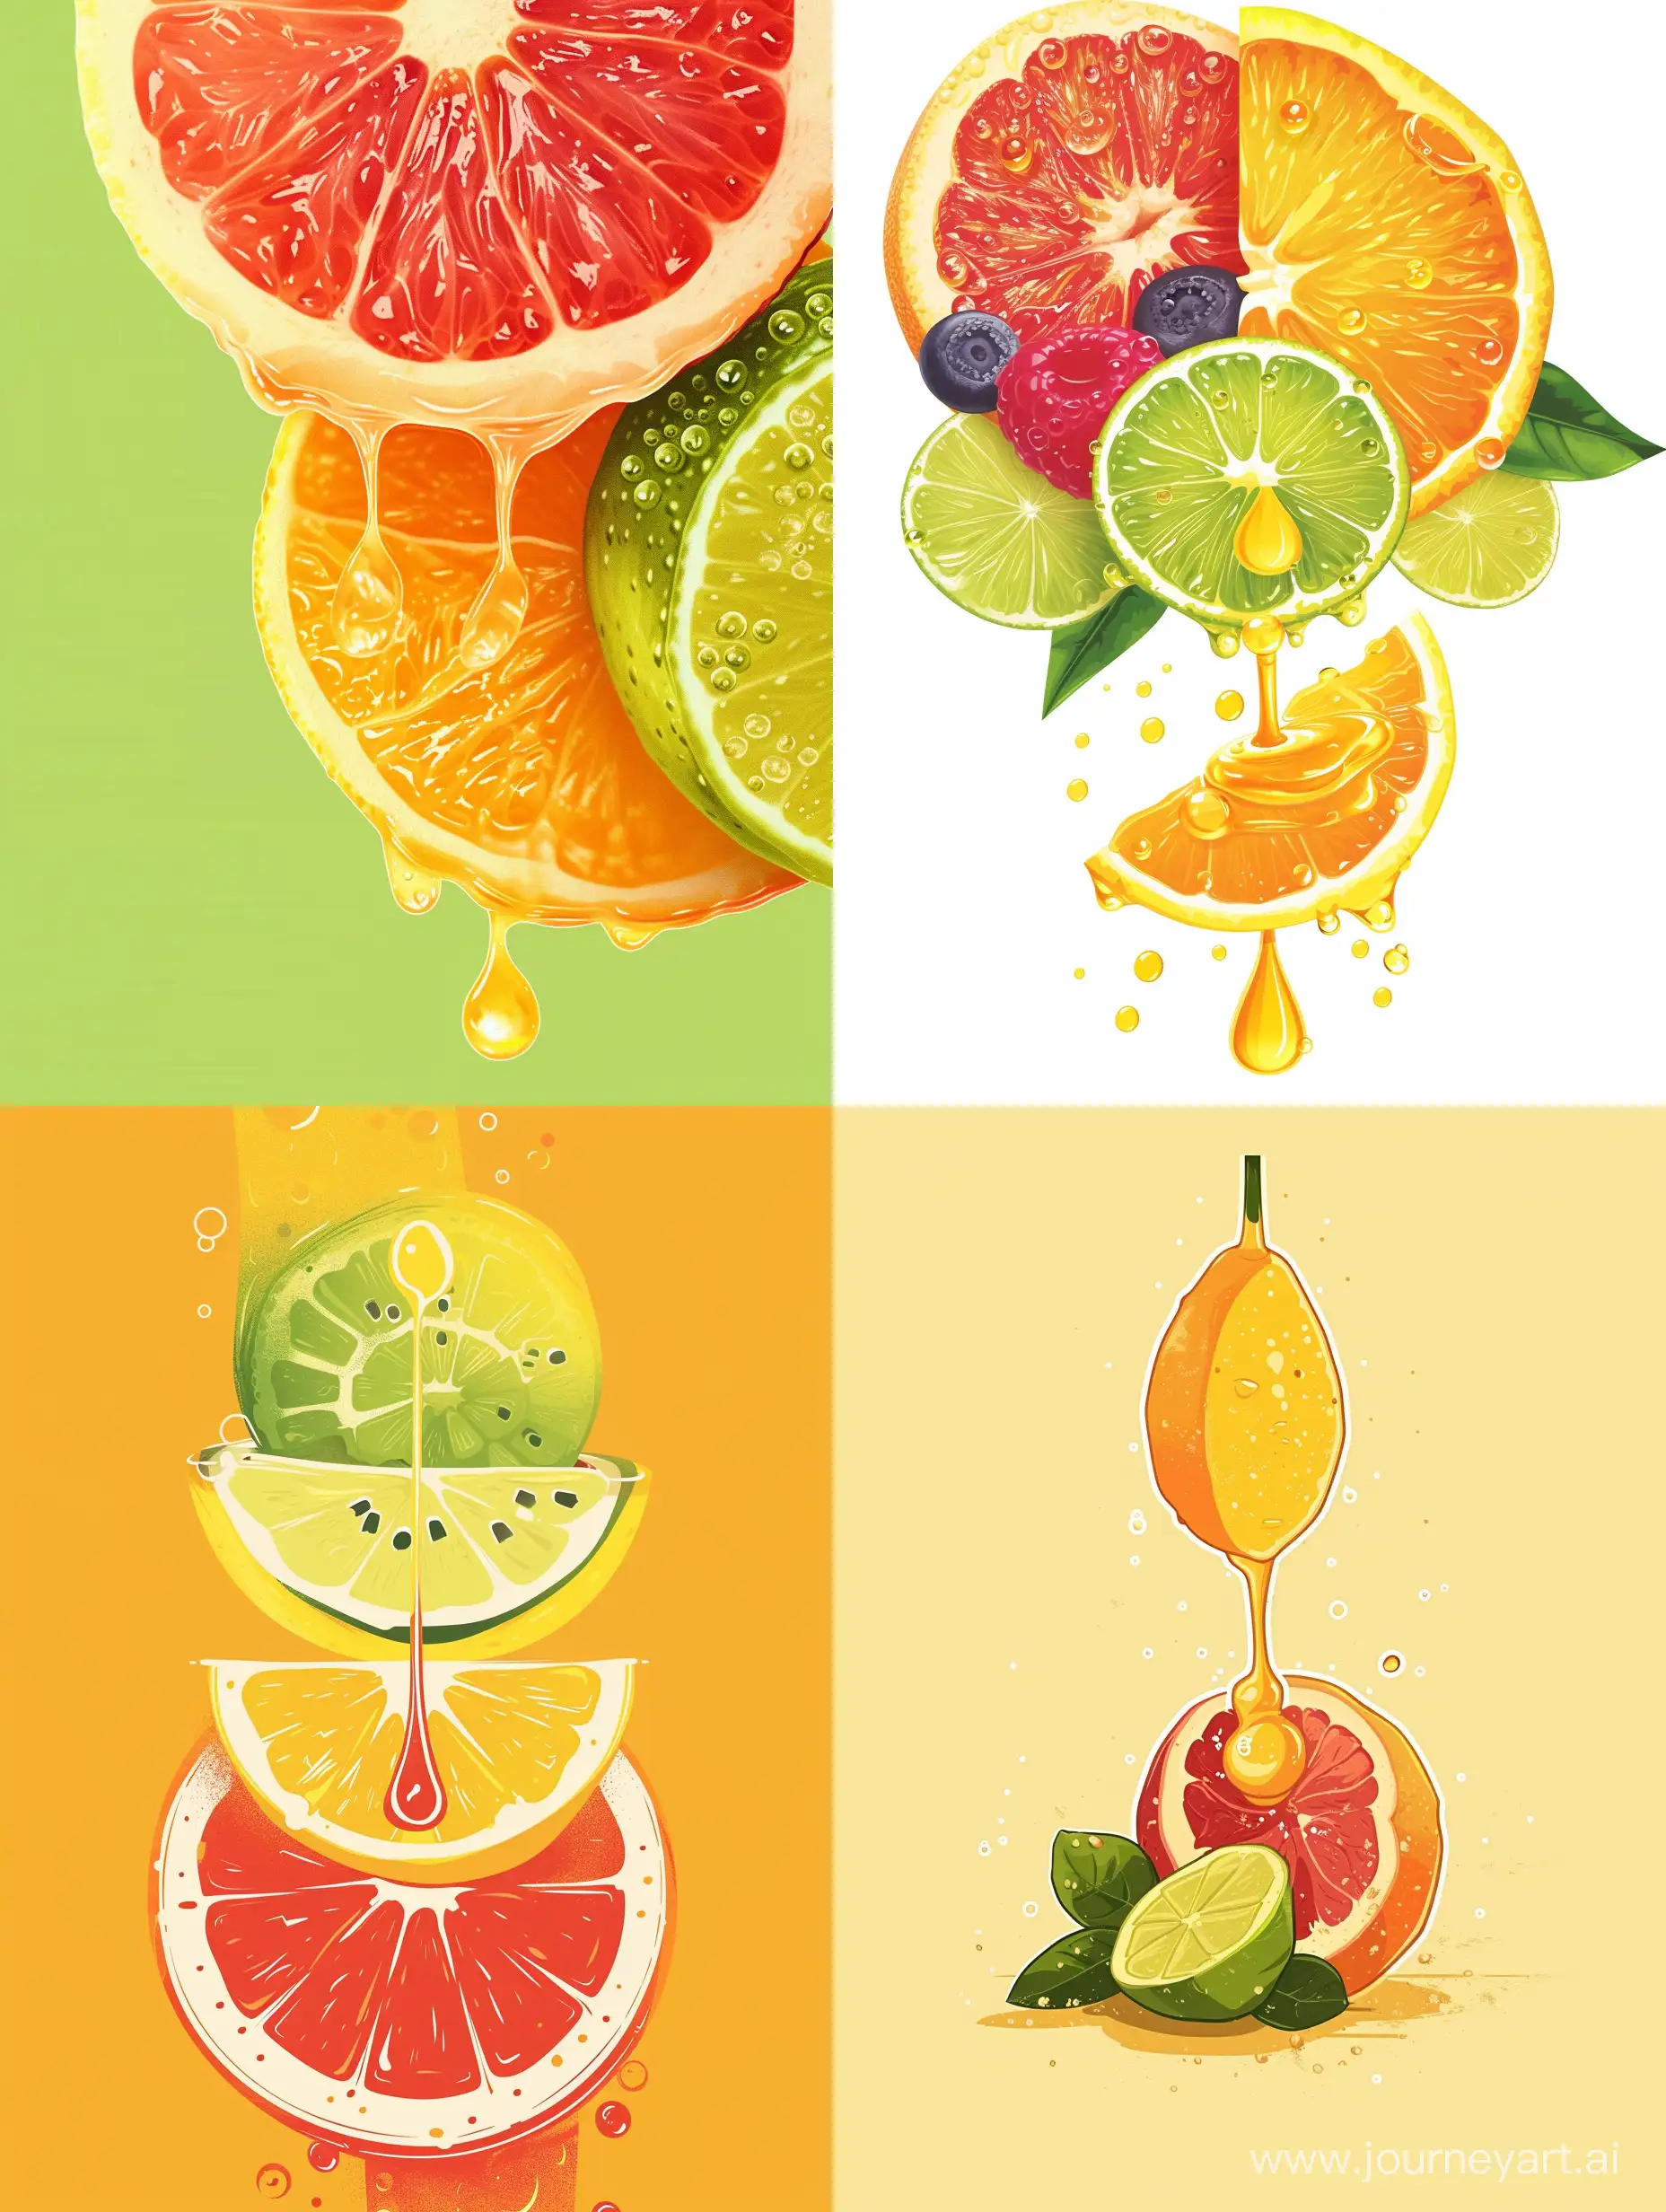 "AquaFresh" Тематика: Производство натуральных освежающих напитков. Логотип: Изображение свежего, сочного фрукта, из которого вытекает освежающая капля сока. Яркие тона ассоциируются с природой и свежестью.